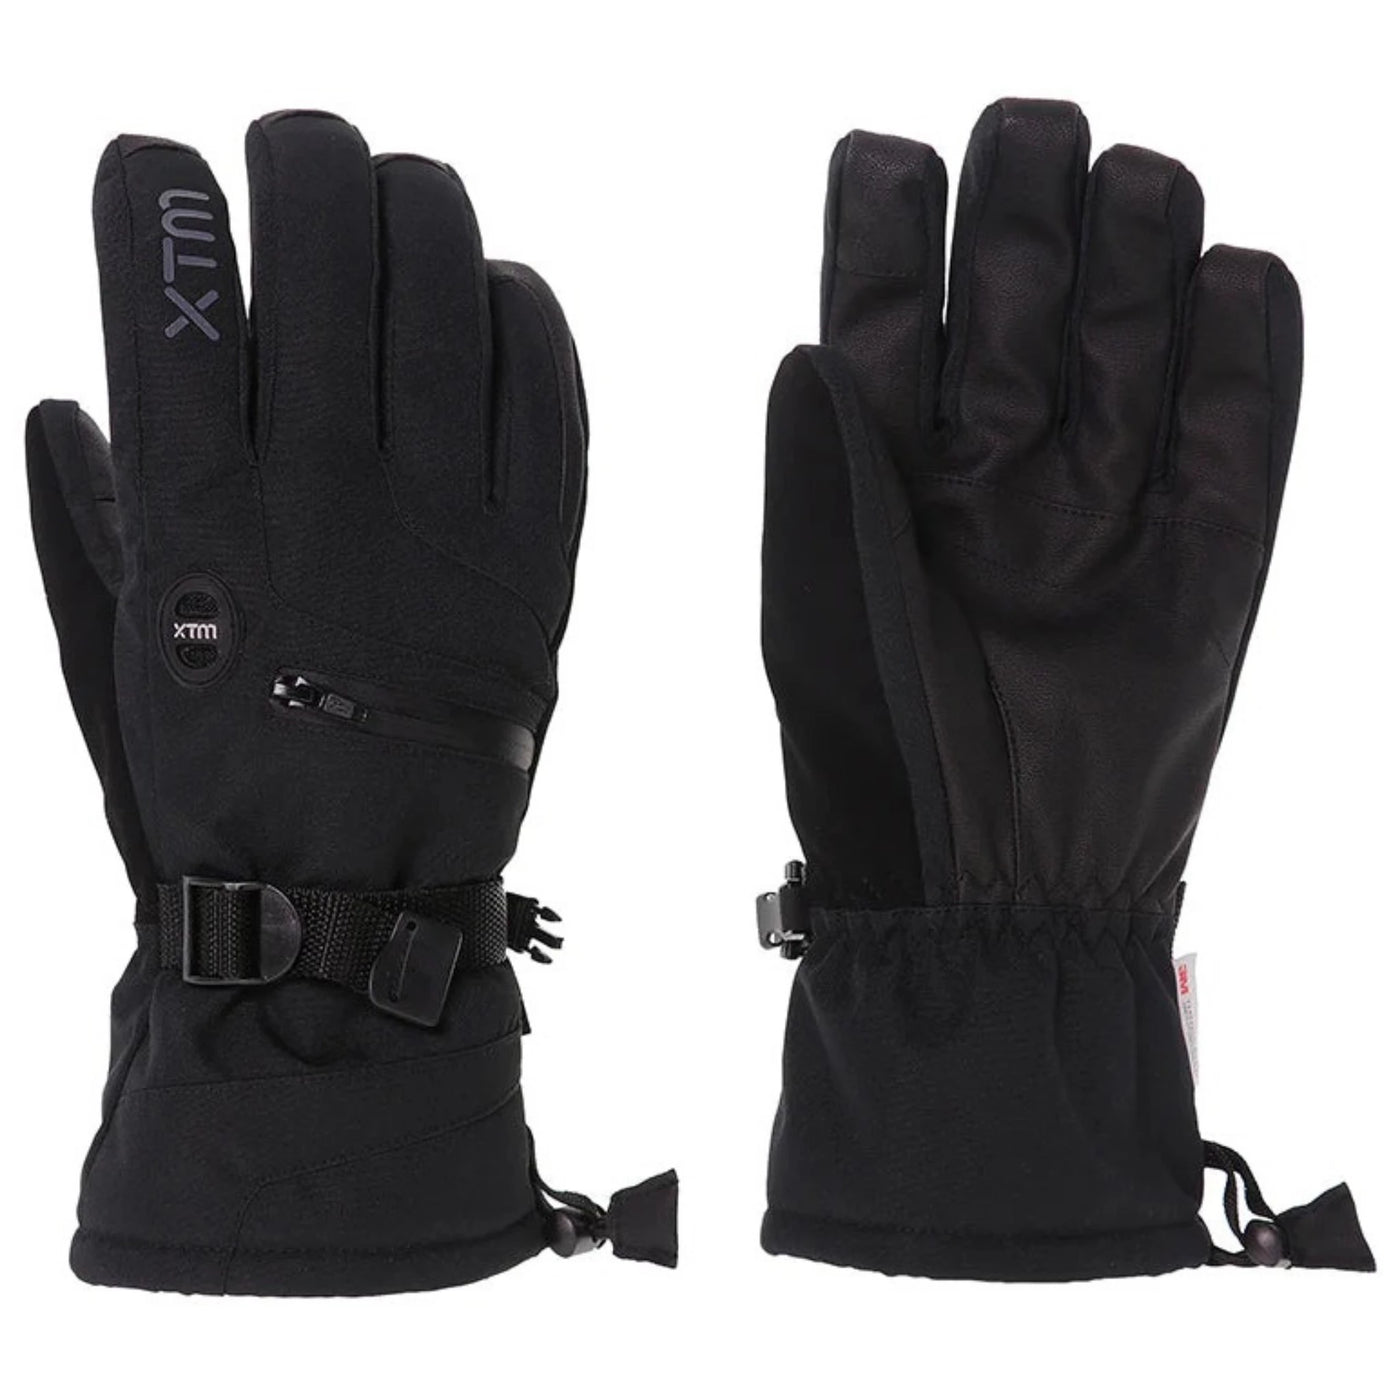 XTM Men's Samurai Snow Gloves - Black